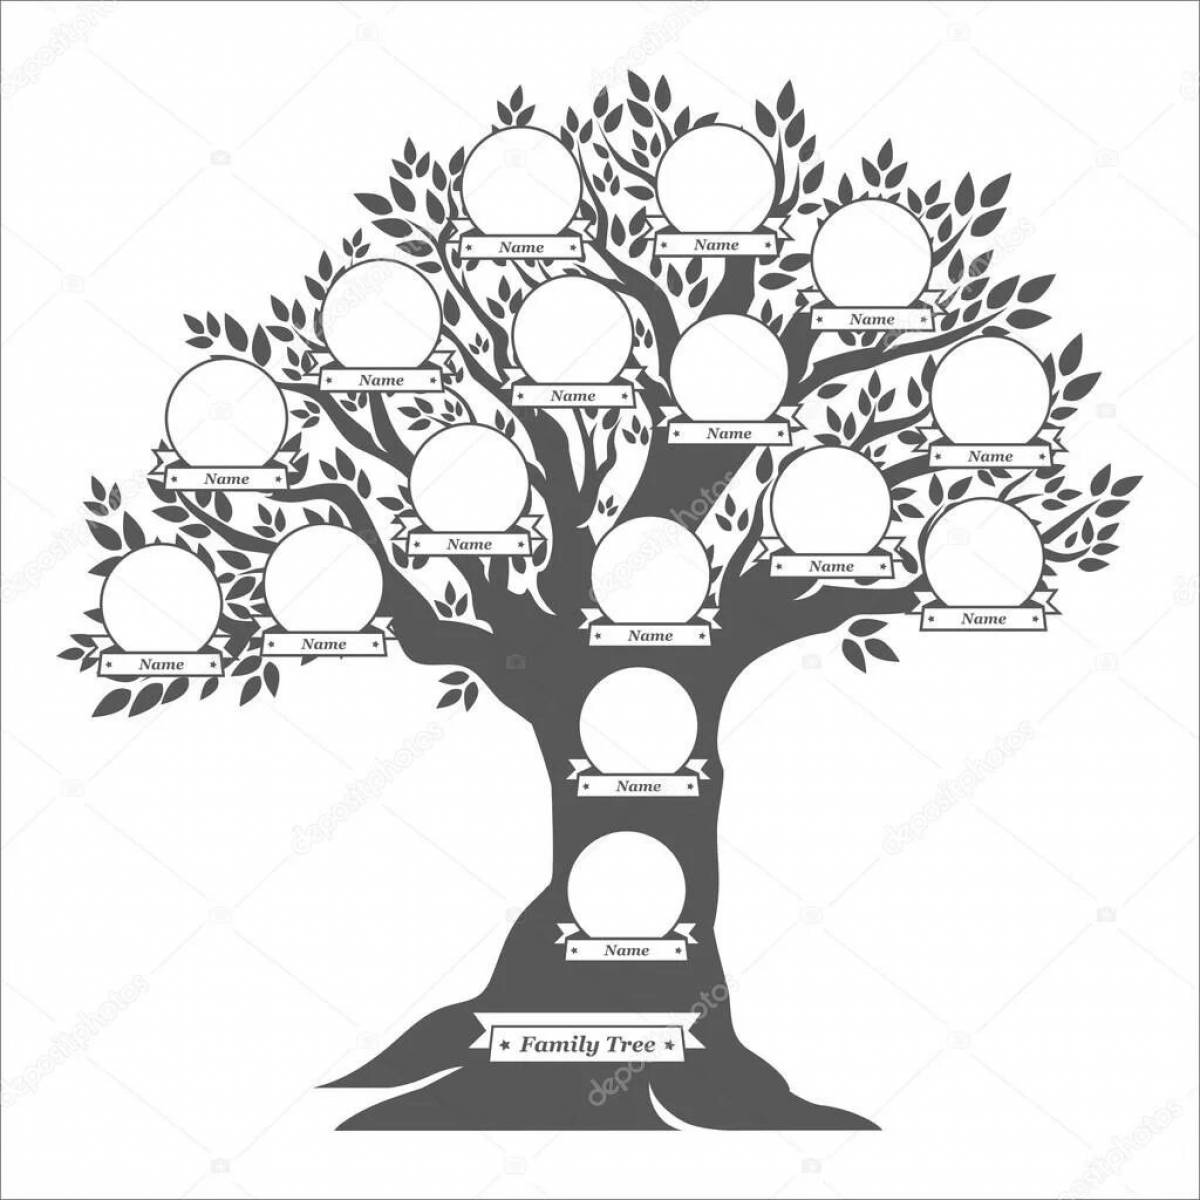 Fancy family tree template